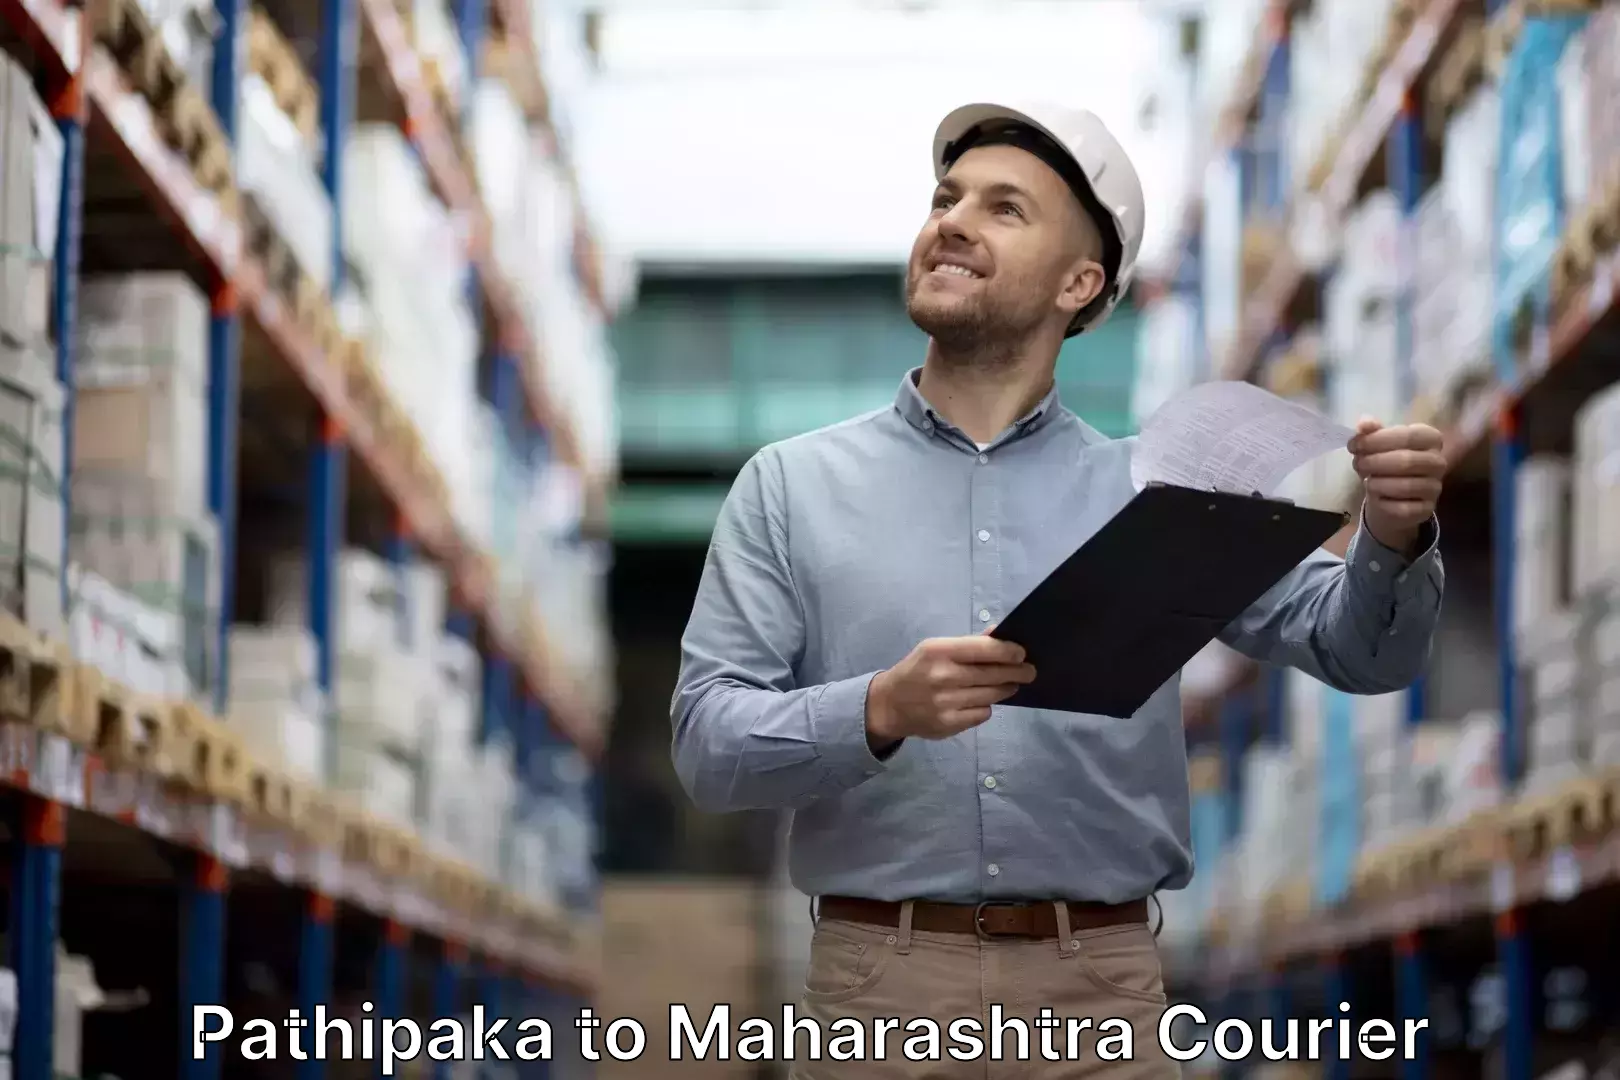 Baggage transport management Pathipaka to Maharashtra